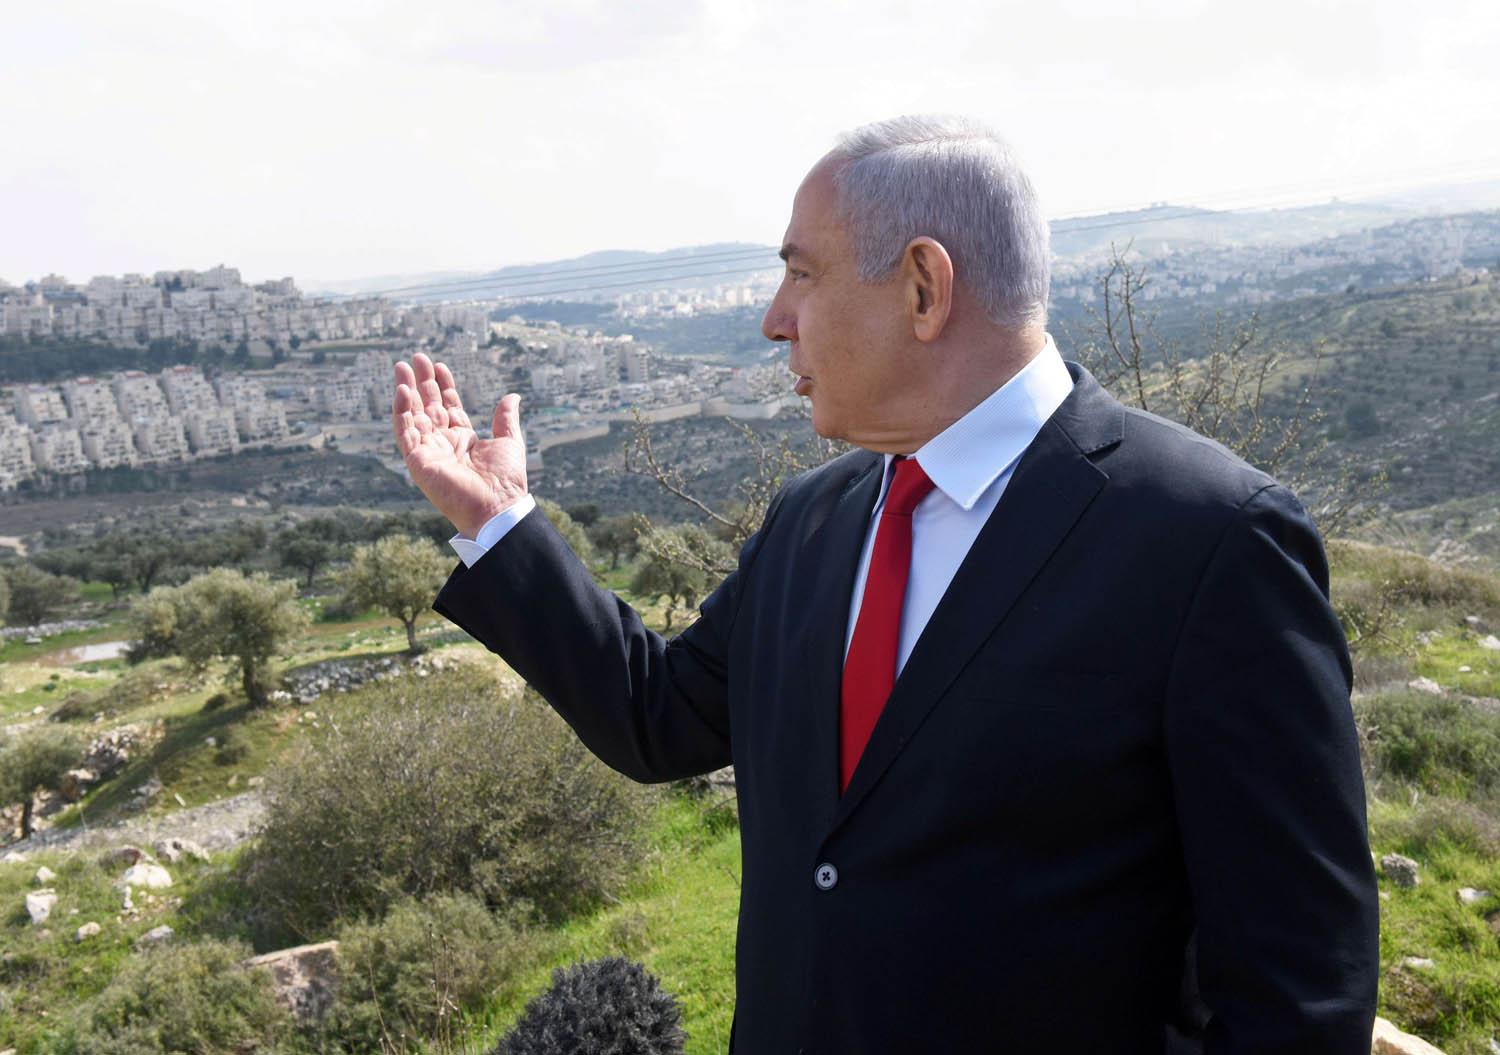 رئيس الوزراء الاسرائيلي بنيامين نتانياهو أمام مجموعة من المستوطنات في الضفة الغربية